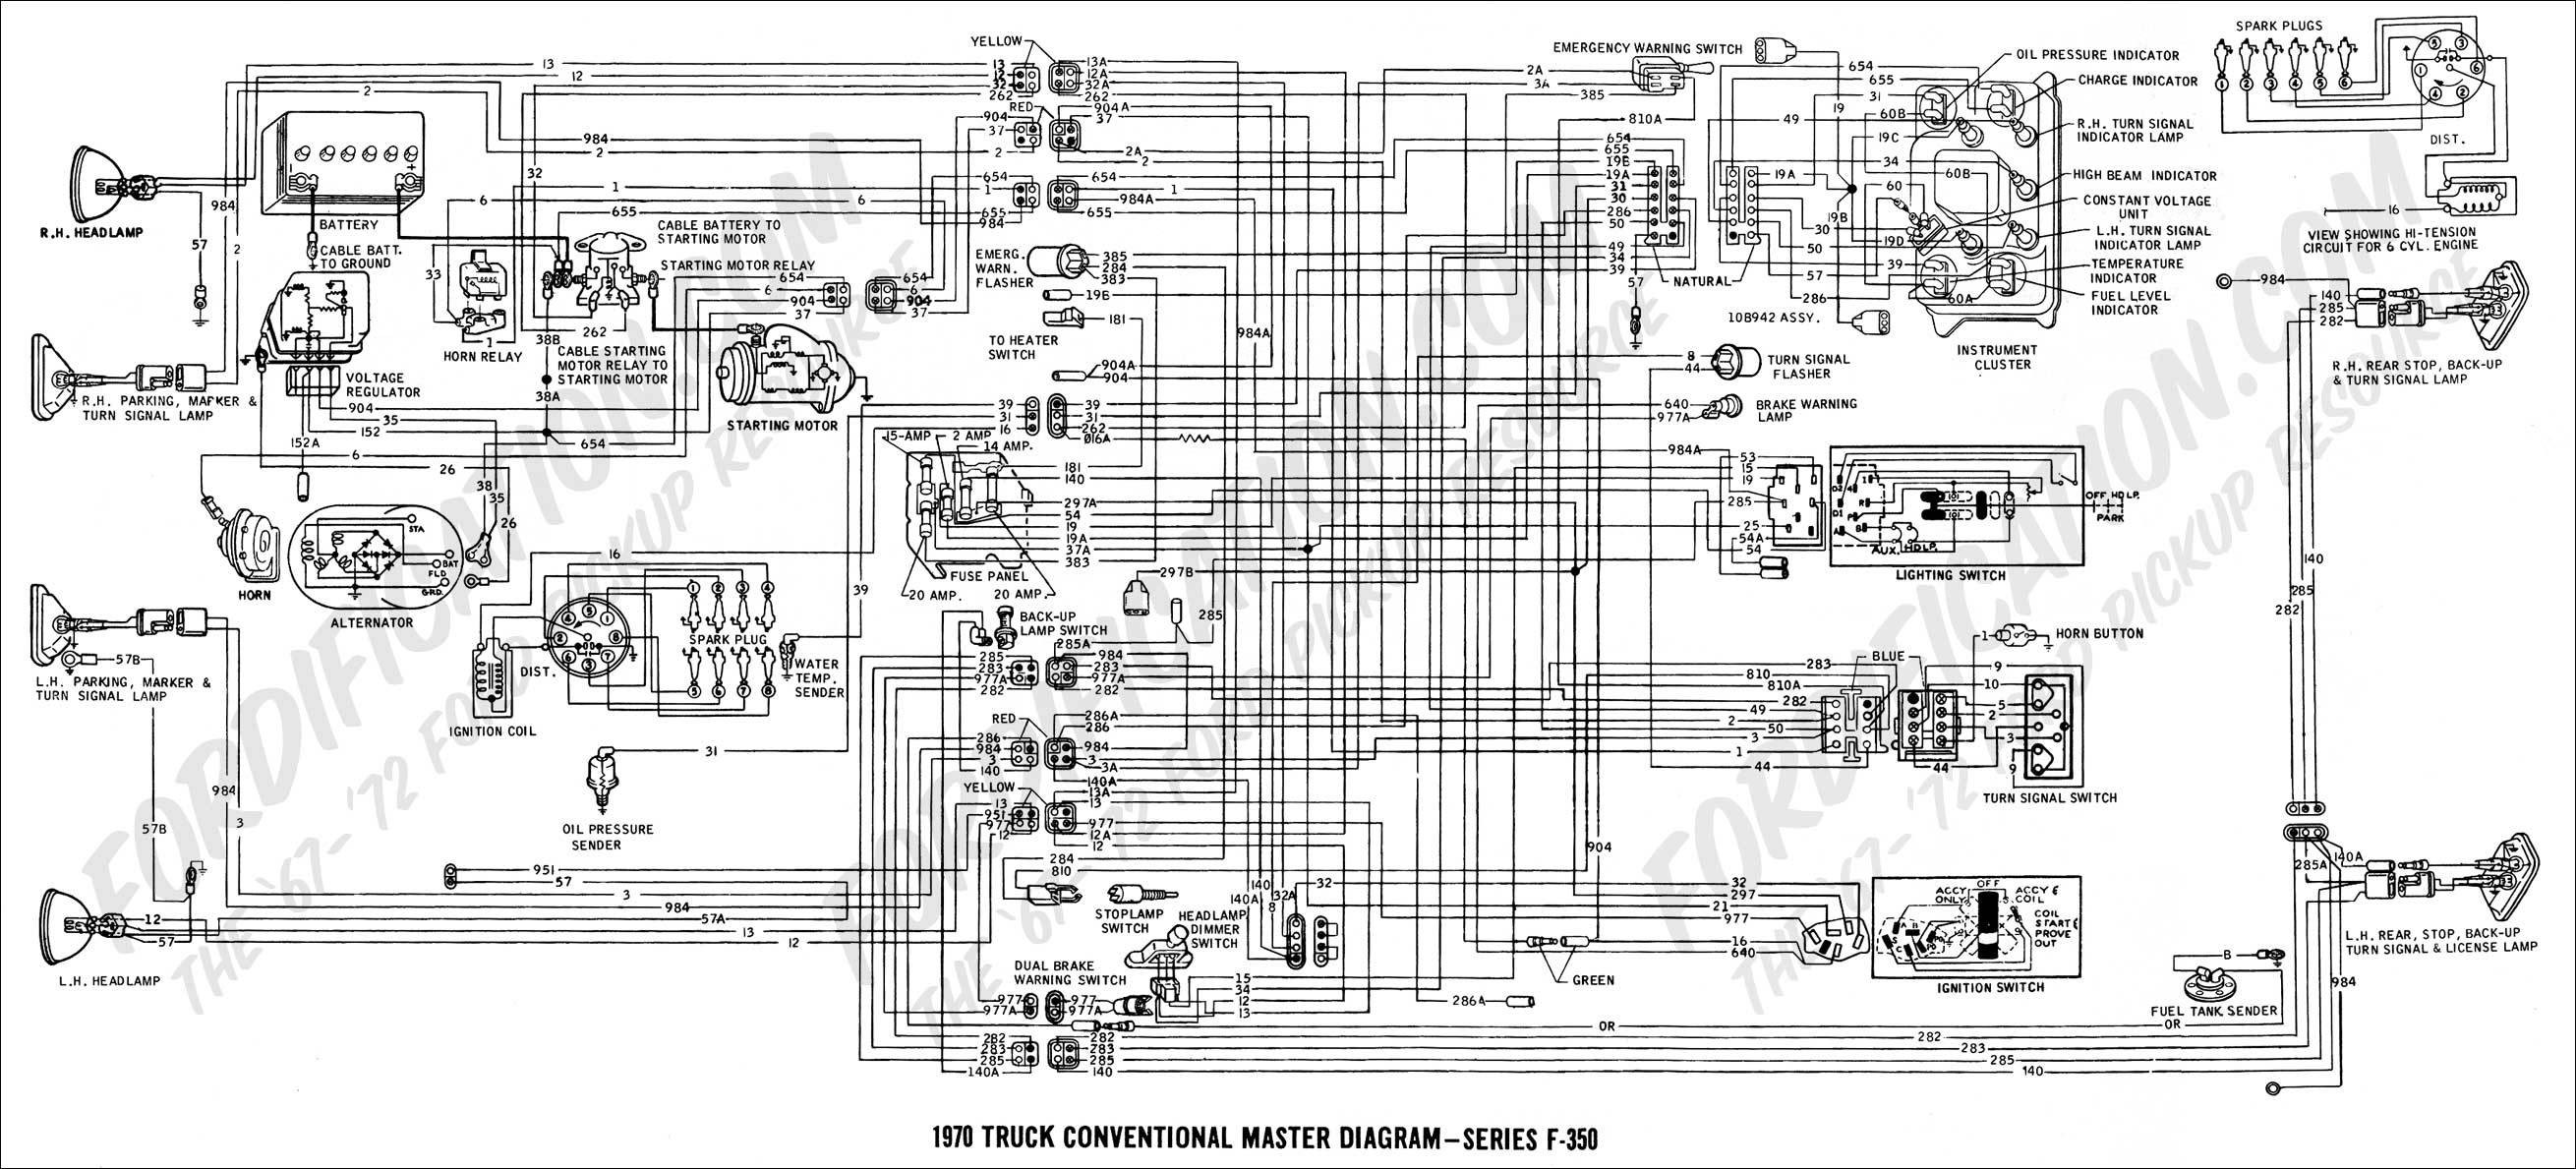 2002 Wrx Engine Diagram Bucket 2002 F350 Superduty Electrical Wiring Diagrams Wiring Info • Of 2002 Wrx Engine Diagram